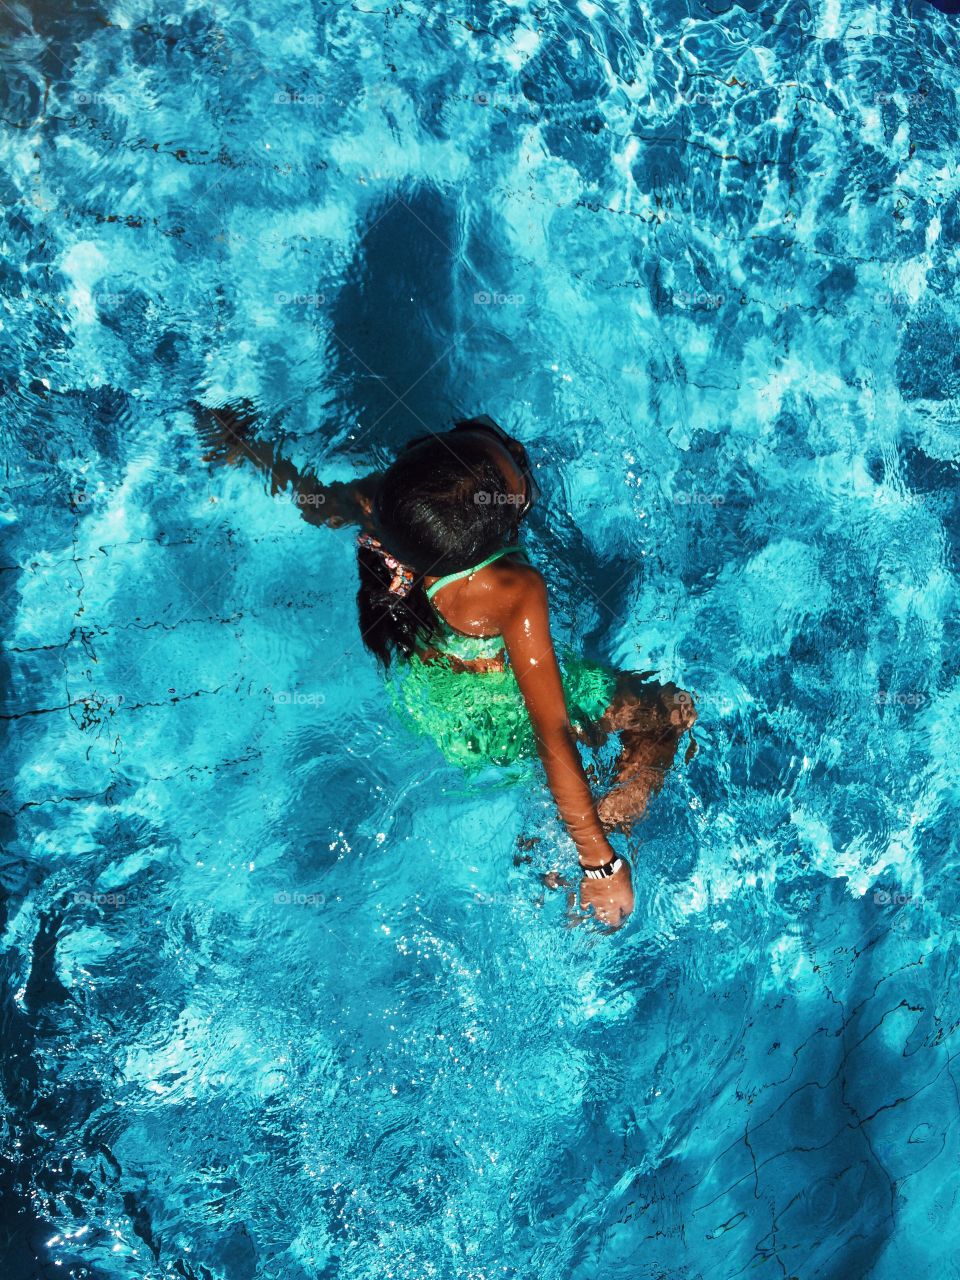 Teenage girl in swimming pool